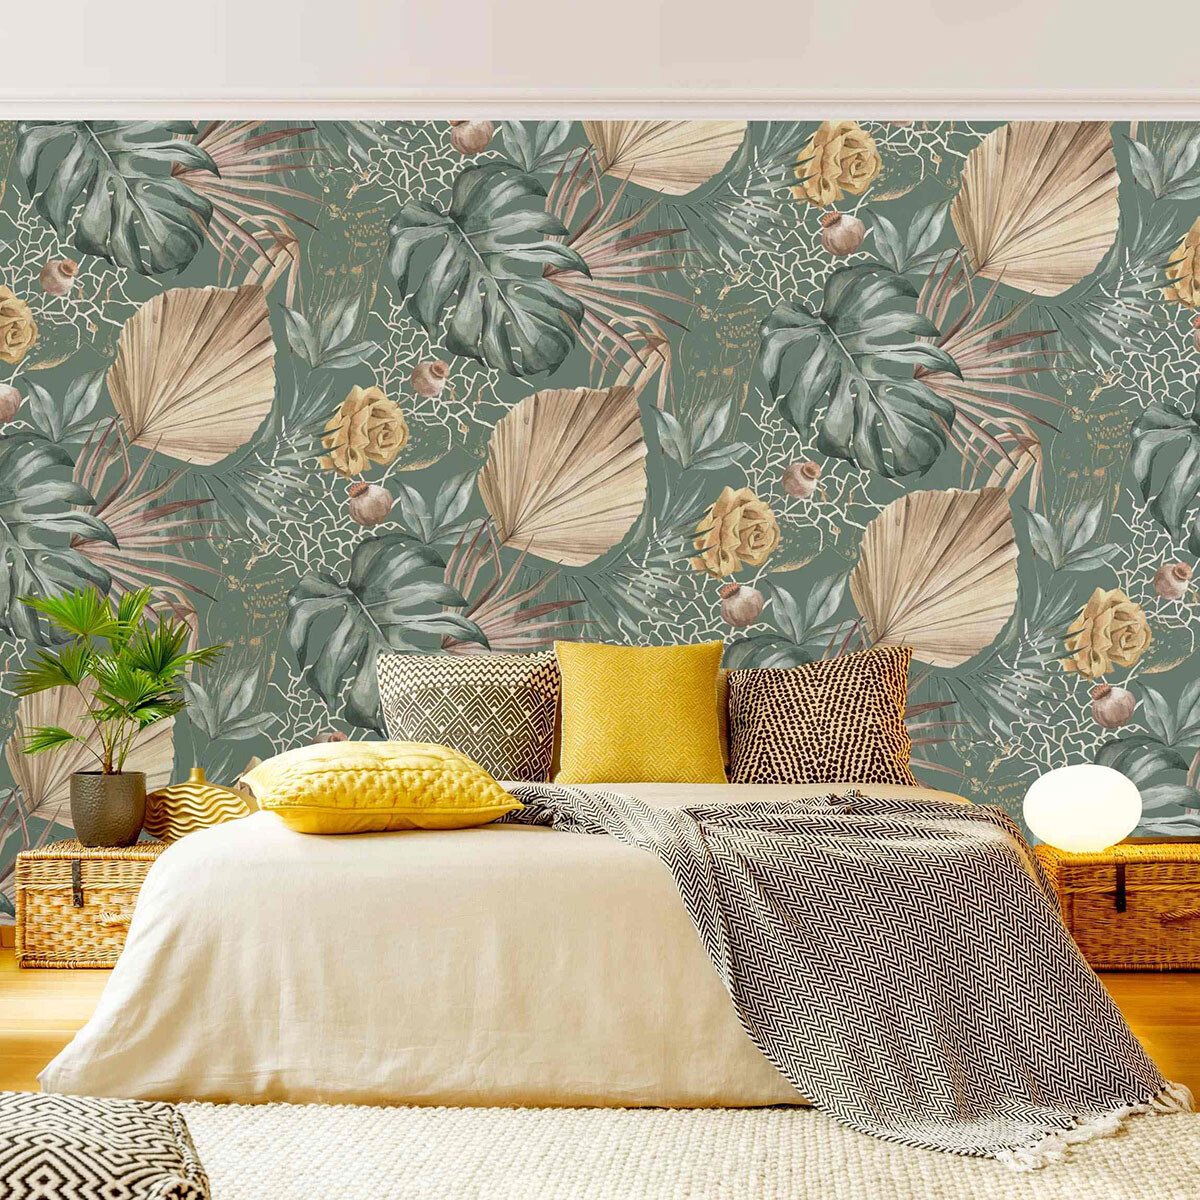 Fototapete Schlafzimmer Natur – Große Blätter mit Rosen vor Grün